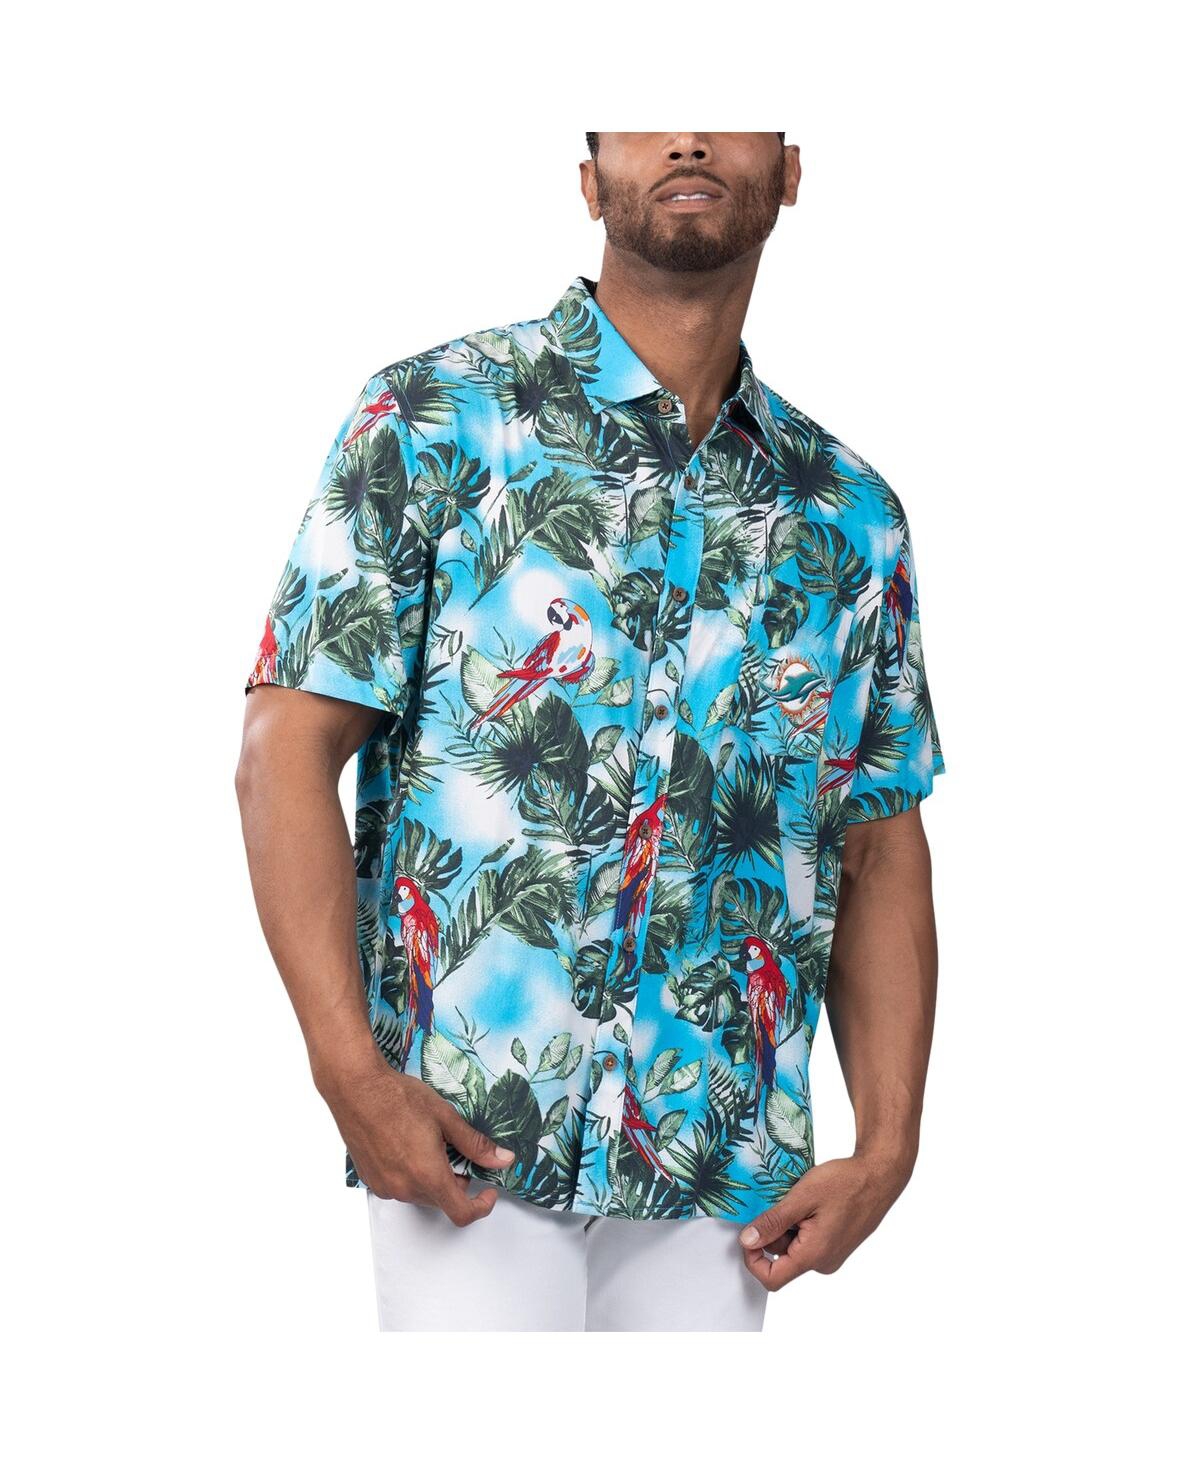 Shop Margaritaville Men's  Light Blue Miami Dolphins Jungle Parrot Party Button-up Shirt